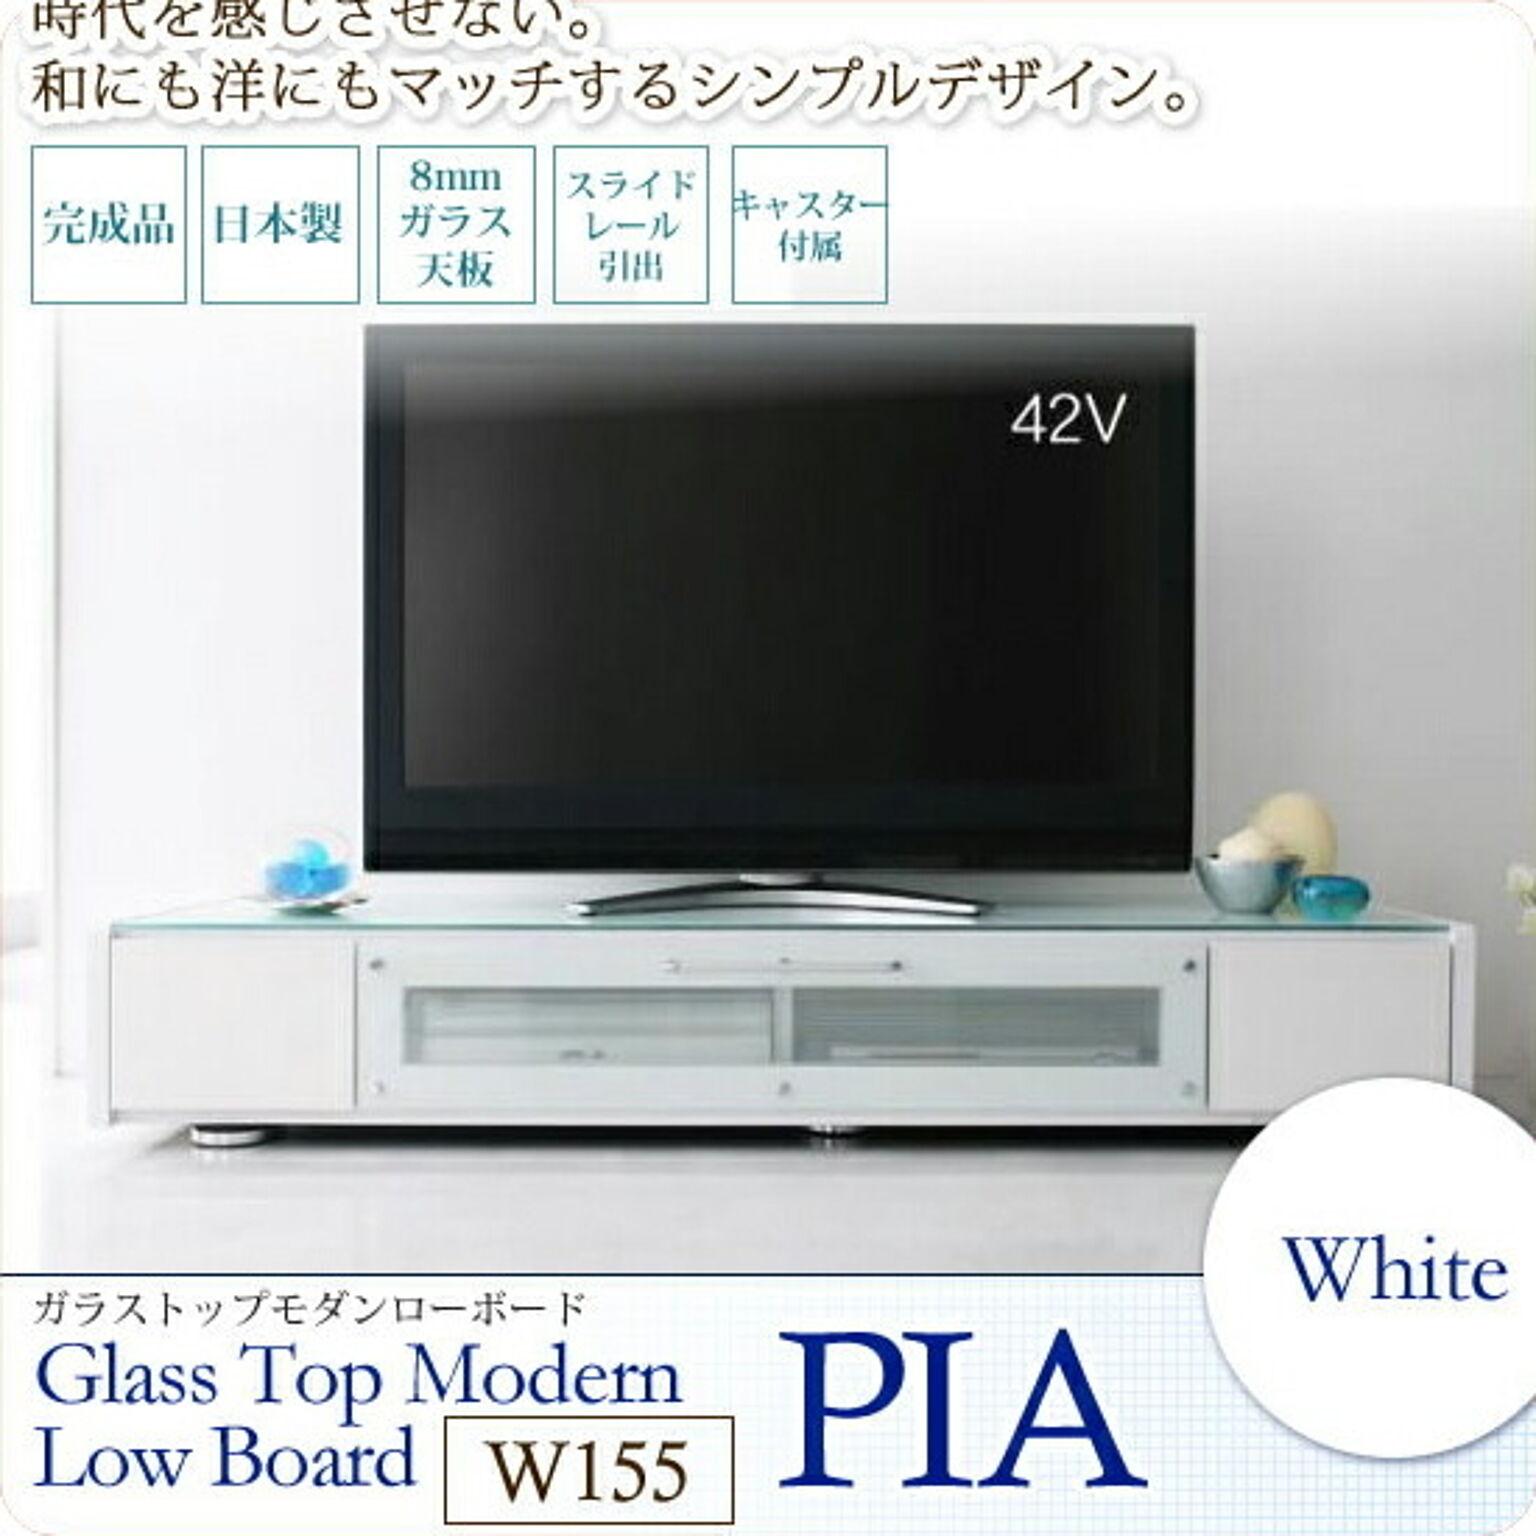 ホワイト：W155 ： ガラストップモダンローボード (ピア)【PIA】 ホワイト(white) (アーバン) TVボード TV台 TVラック テレビボード テレビ台 テレビラック 